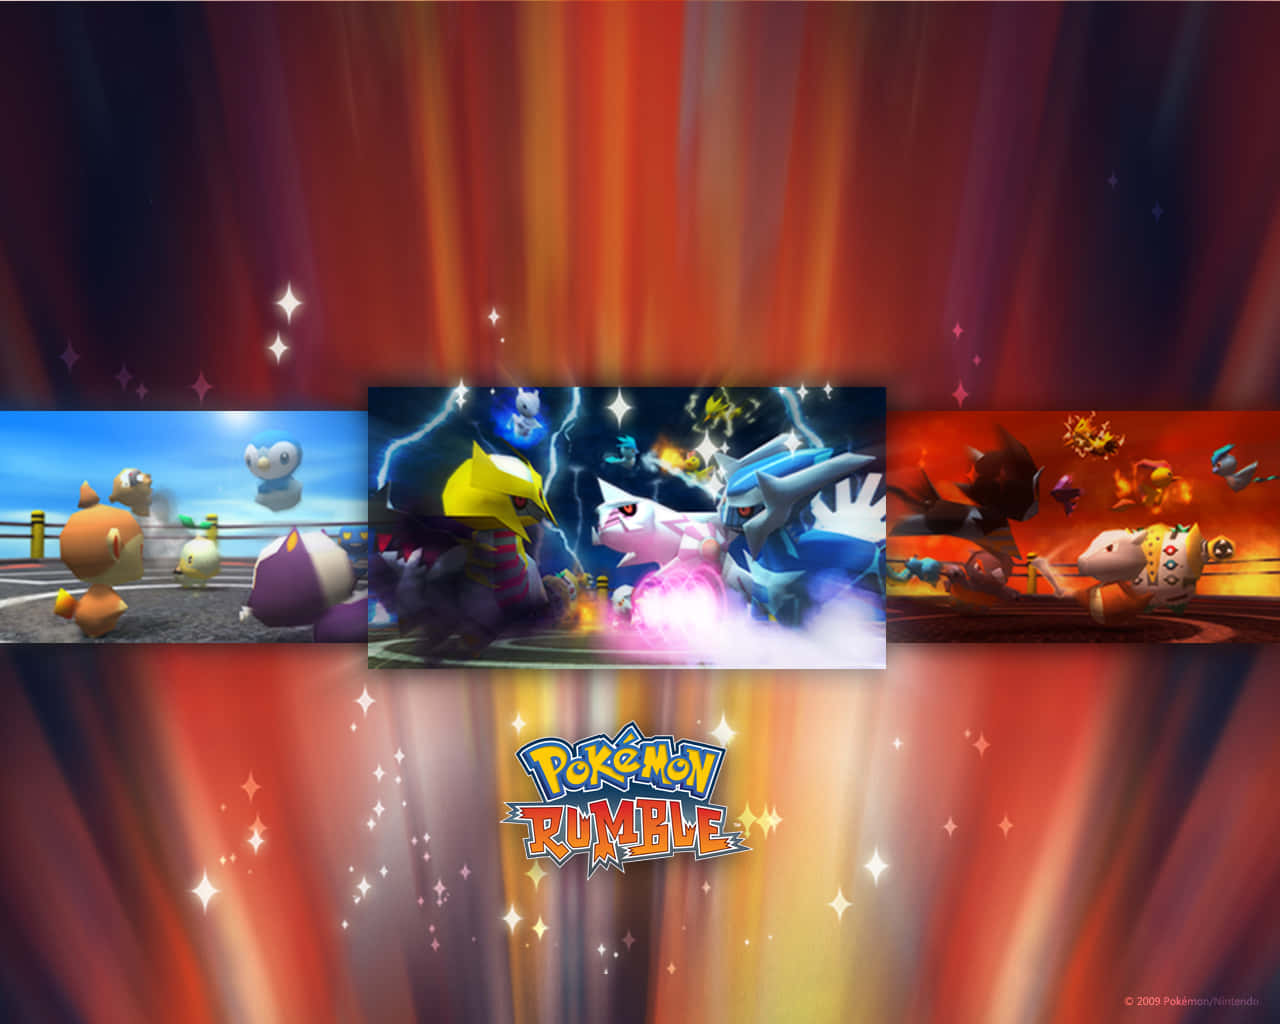 Battle it out in Pokemon Rumble Wallpaper